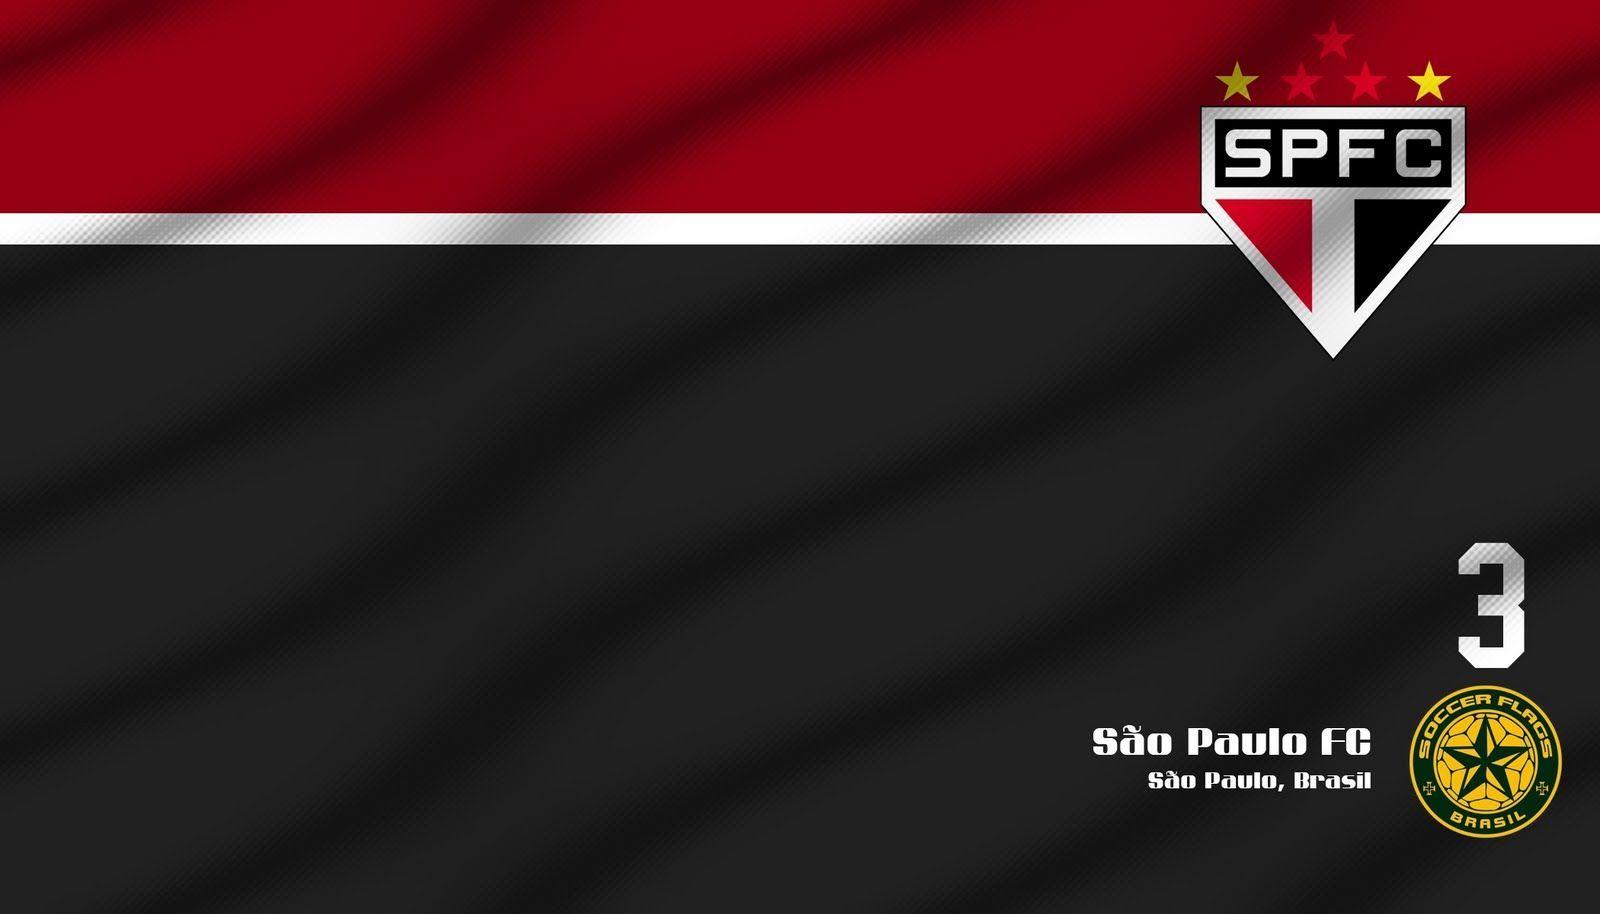 1600x914 Pack.39: Hình nền Sao Paulo FC 1600x914 px